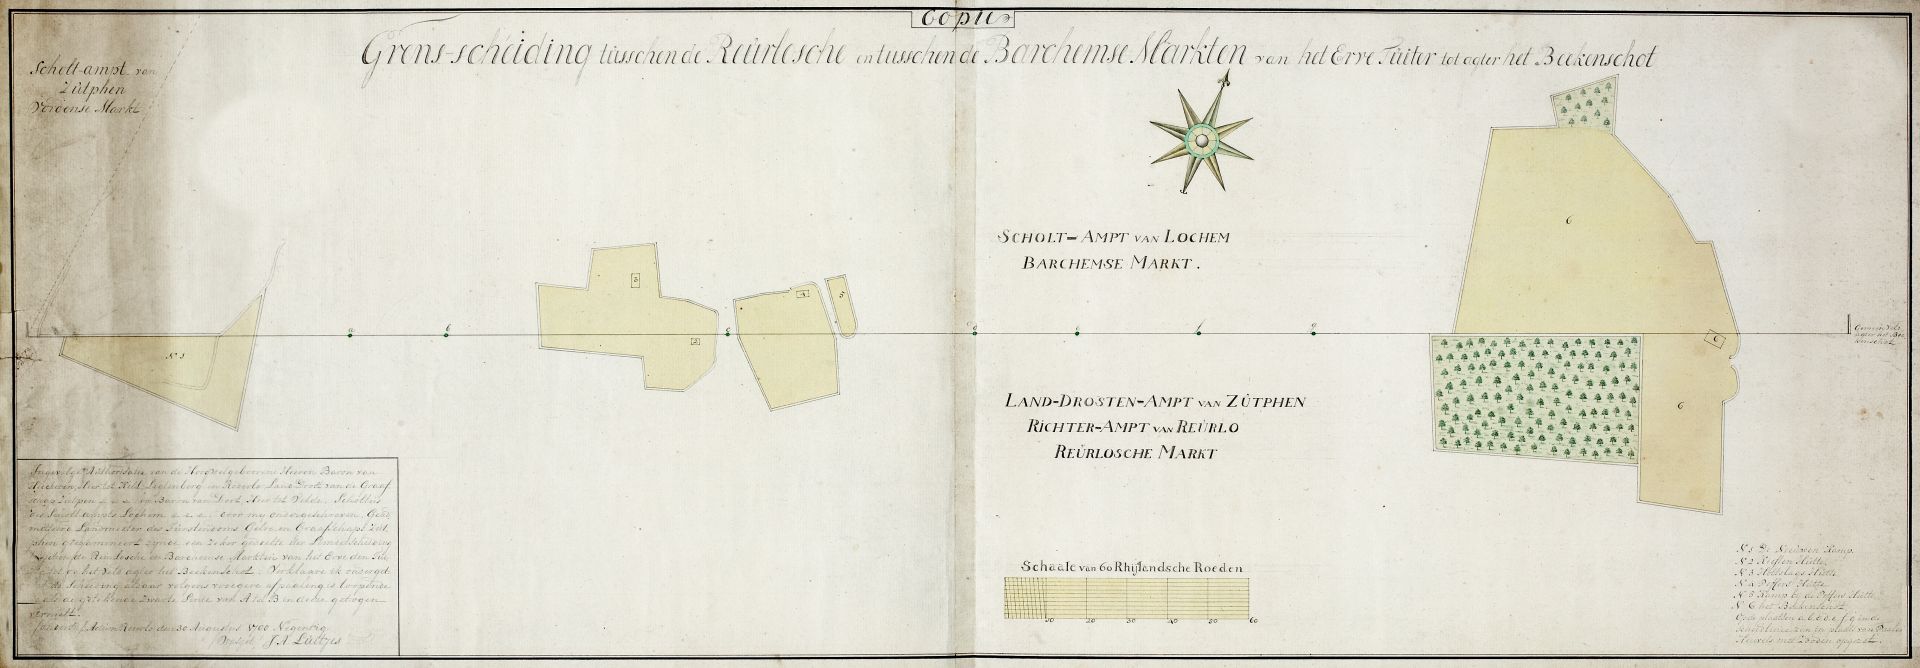 Grenscheiding tussen de mark van Vorden en Ruurlo/Barchem, 1641, 1790